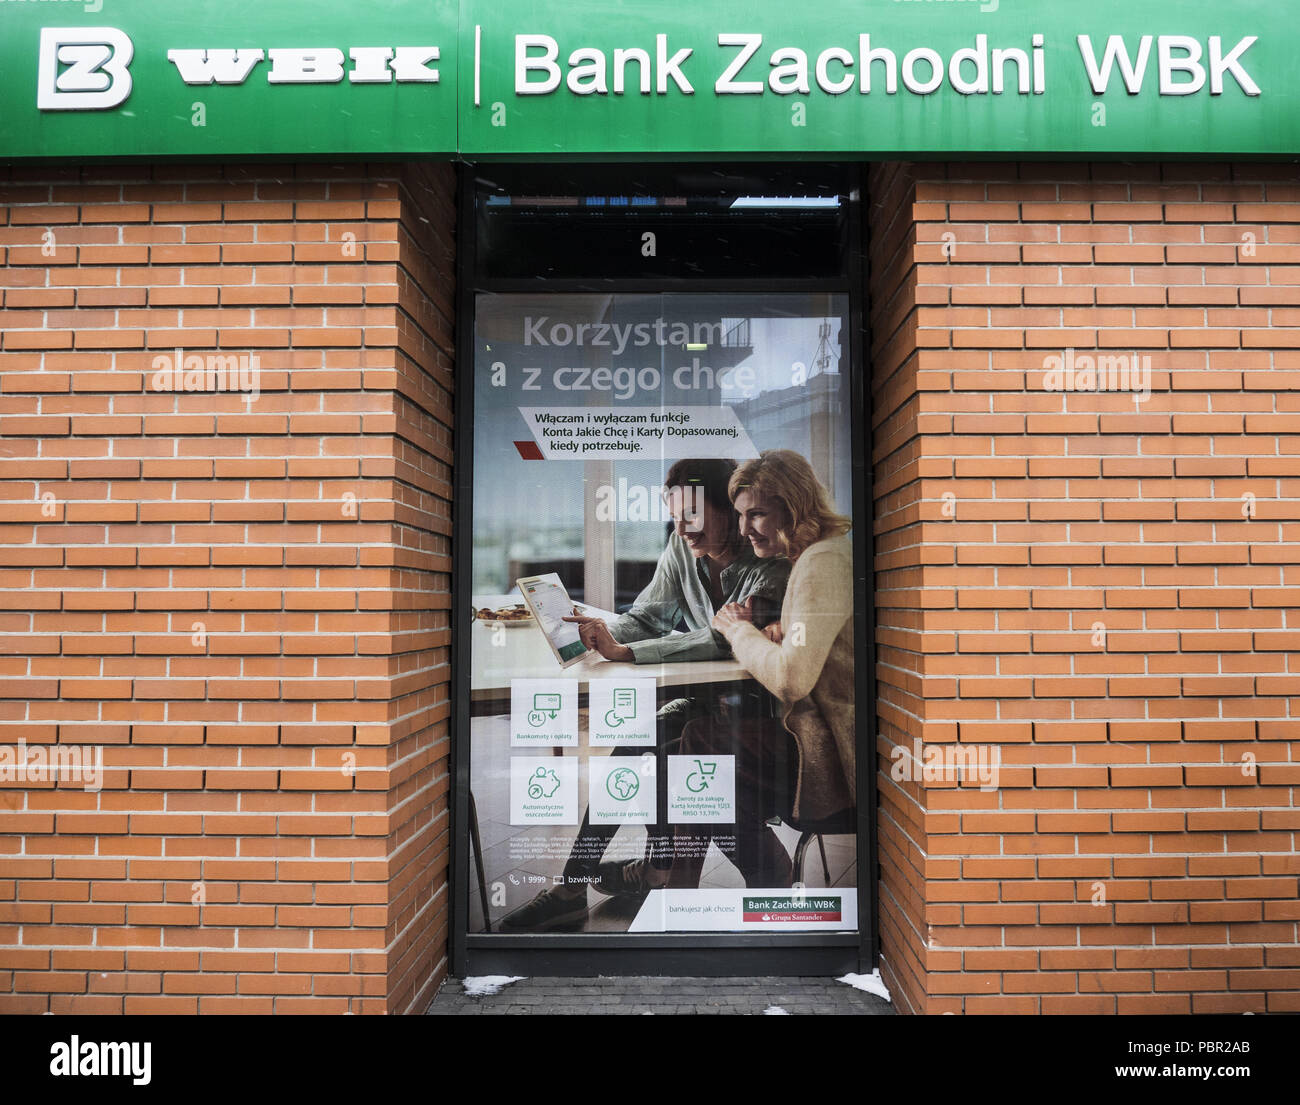 Krakau, Polen. 19 Mär, 2018. Bank Zachodni WBK in Krakau. Bank Zachodni WBK (BZ WBK) ist eine polnische Universalbank. Es ist die drittgrößte Bank in Polen in Bezug auf die Vermögenswerte der Wert und die Zahl der Verkaufsstellen. Es wurde im Jahr 2001 durch die Fusion der Bank Zachodni S.A. und Wielkopolski Bank Kredytowy SA gebildet. Seit 2011 hat die Bank durch die spanische Bank Santander Gruppe geführt. Quelle: Igor Golovniov/SOPA Images/ZUMA Draht/Alamy leben Nachrichten Stockfoto